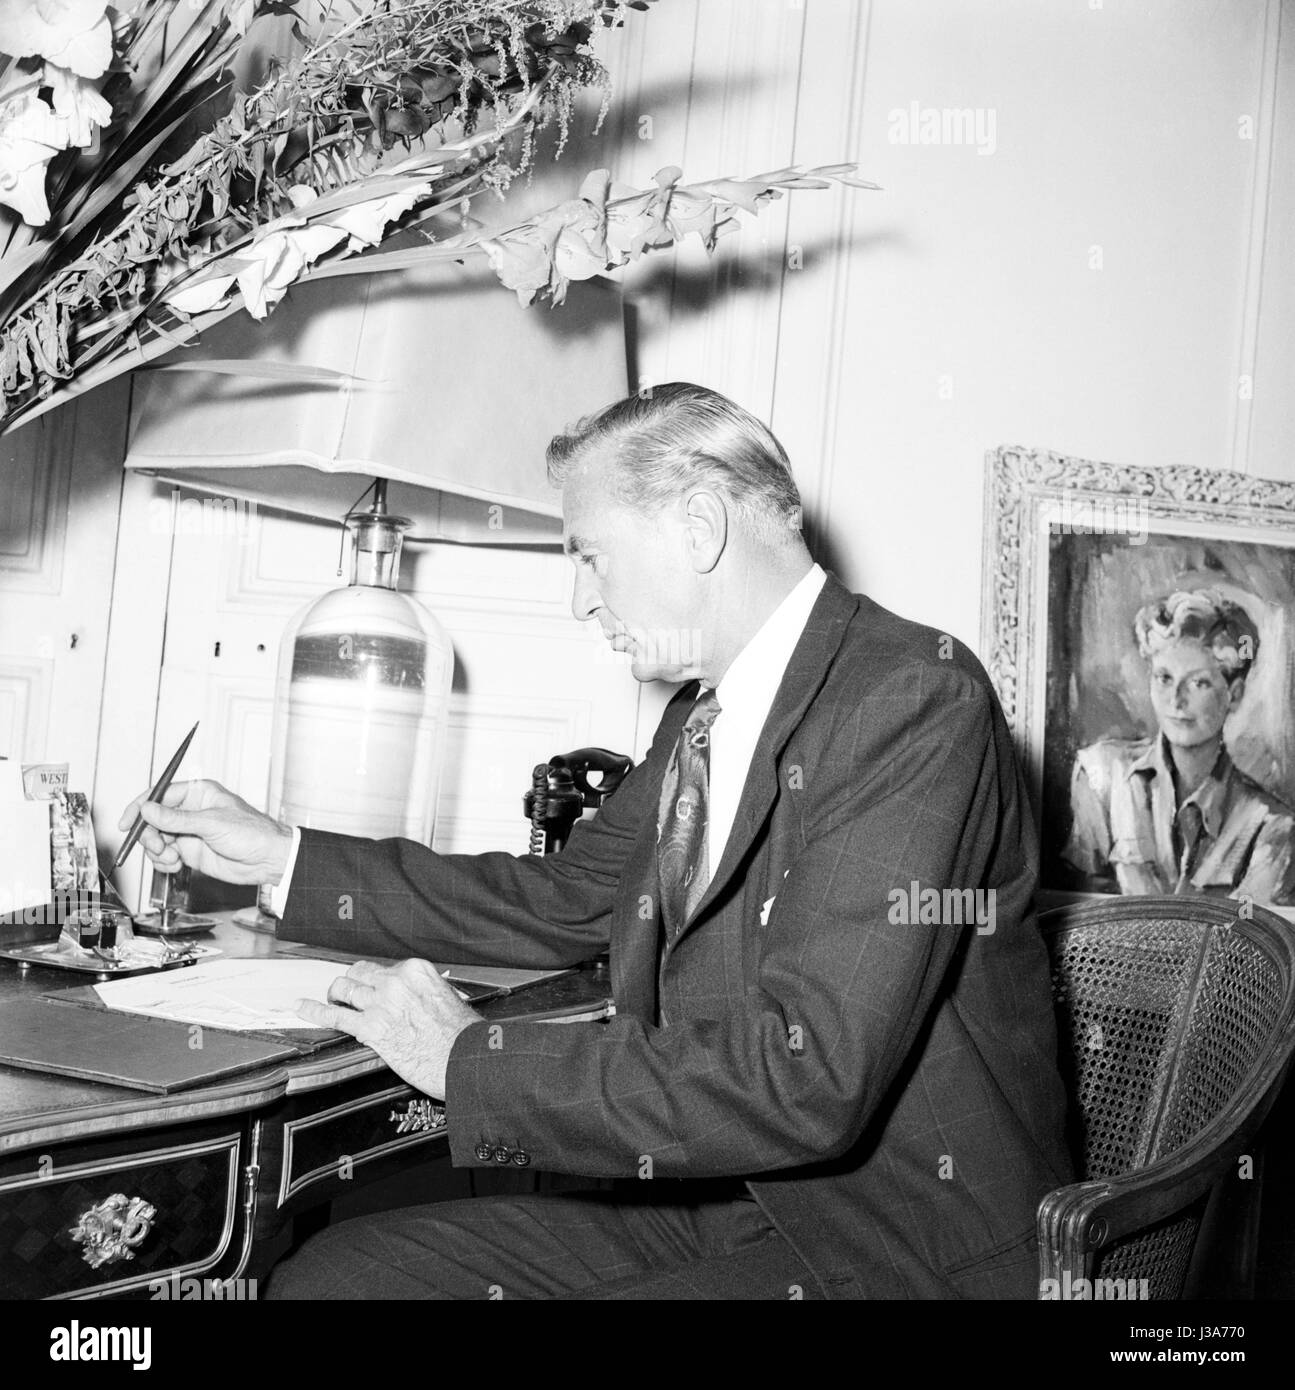 Attore americano Gary Cooper. Egli è a Parigi per giocare nel film "Arianna" diretto da Billy Wilder. 1957 Foto Stock